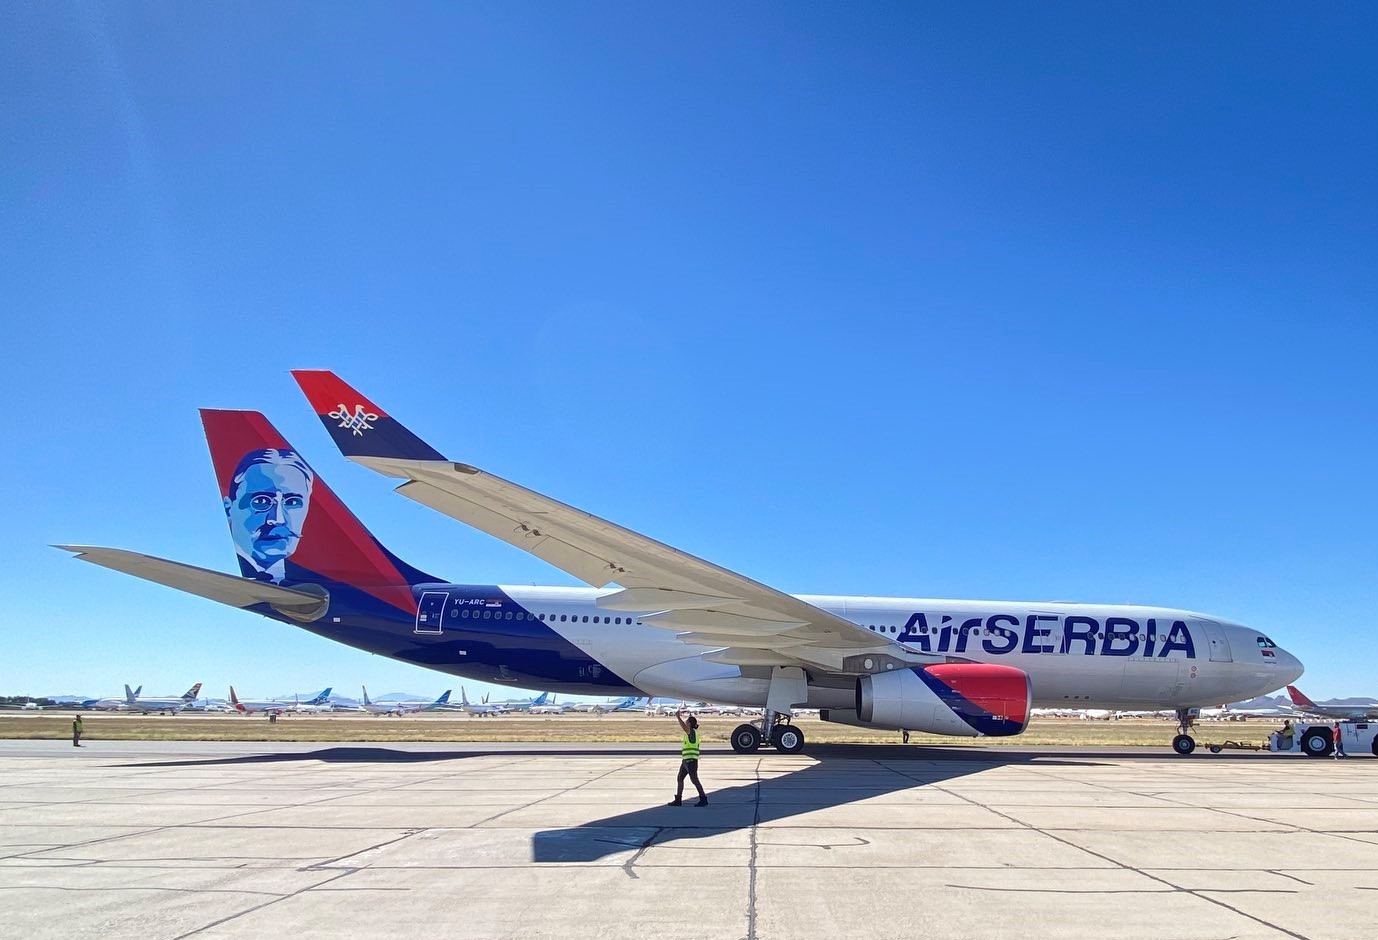 Sırbistan Devleti, Air Serbia’nın Tamamına Sahip Oldu